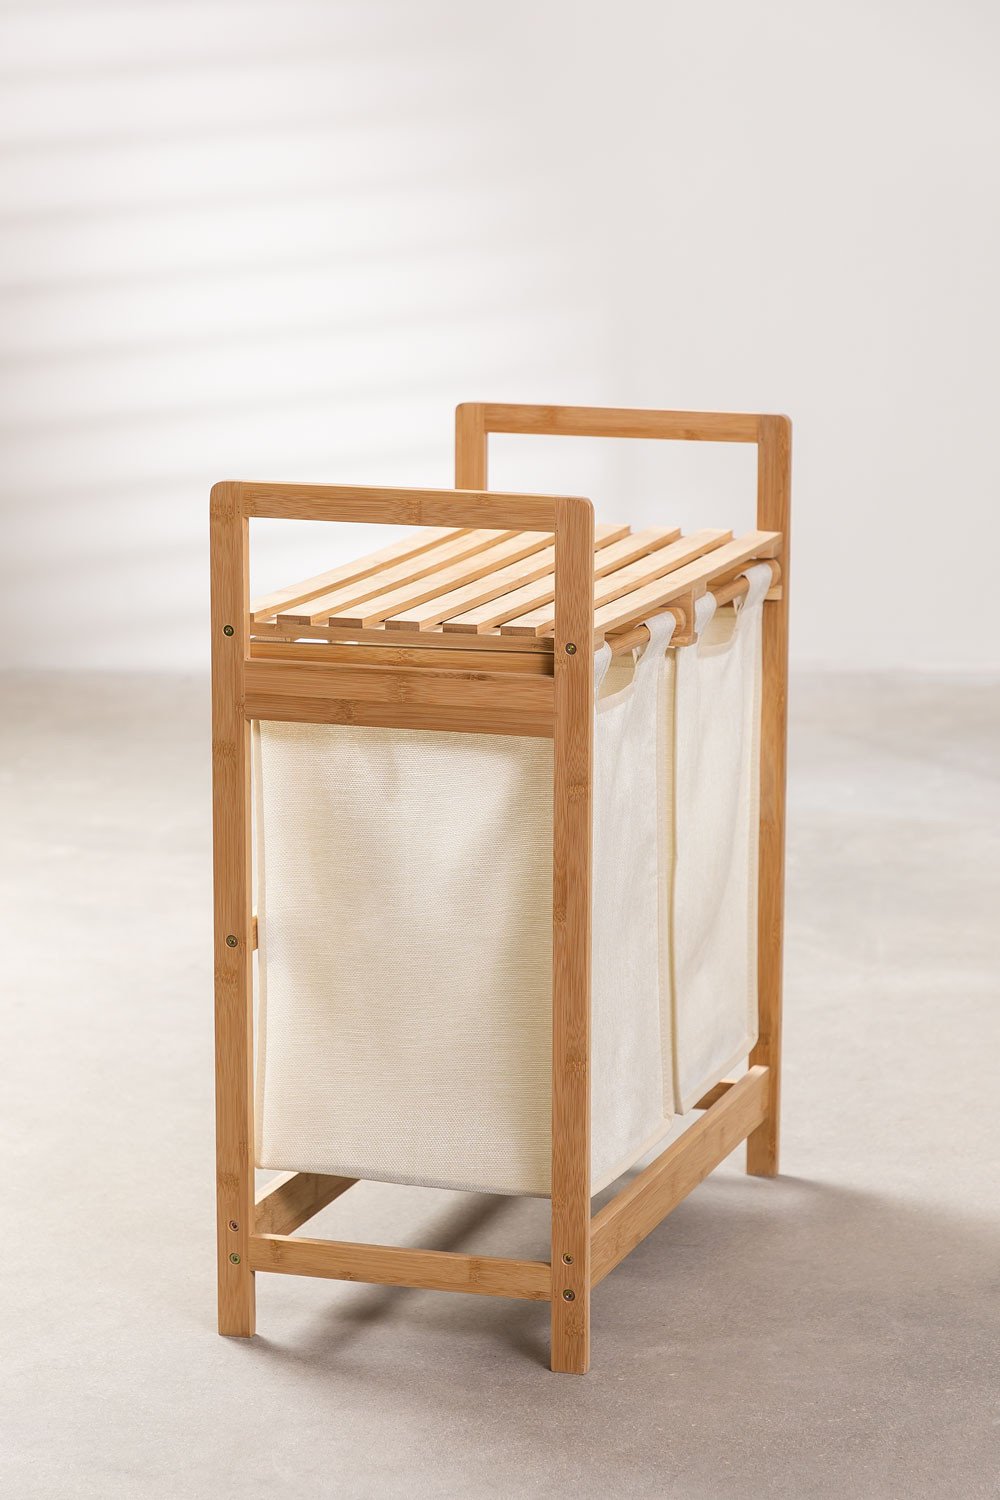 Cesto para la ropa Salla con bolsa extraíble bambú y poliéster 60 x Ø 38 cm  (68 L) - Marrón [en.casa]